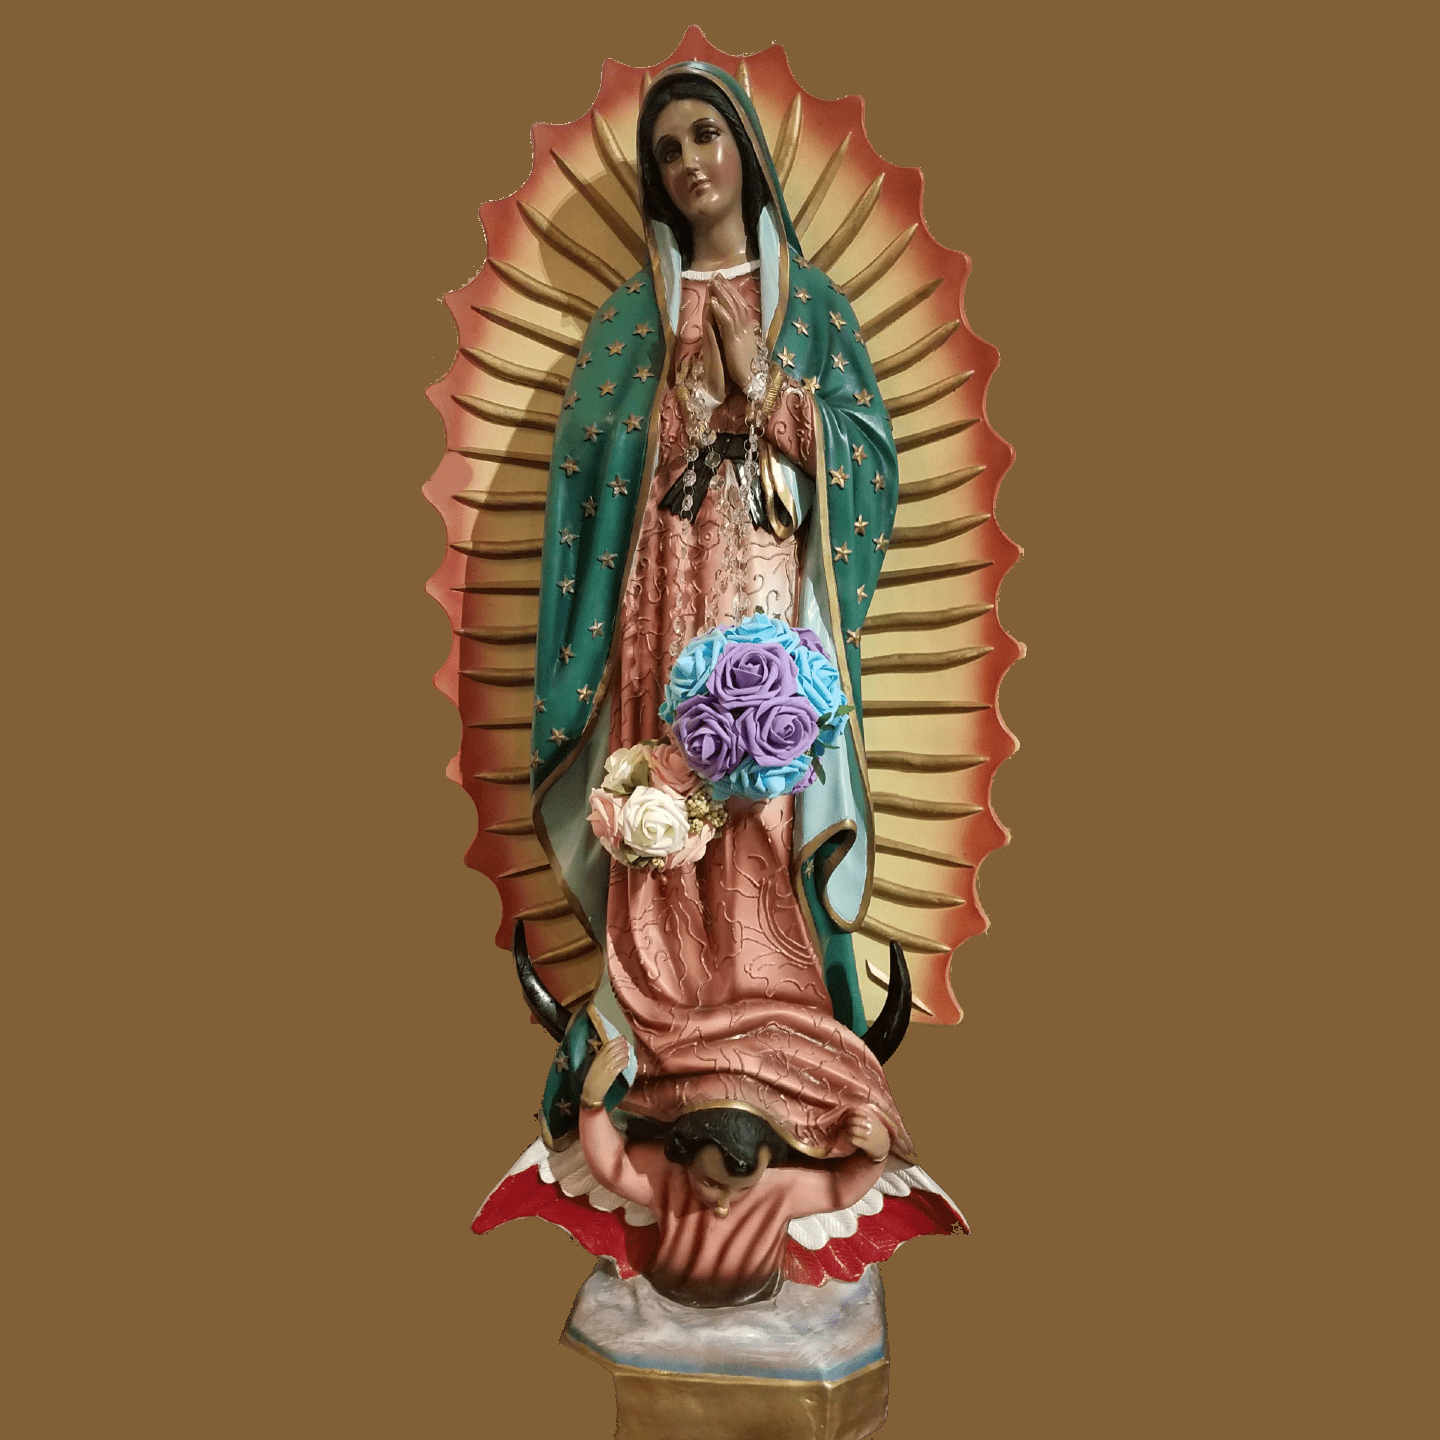 https://doy.org/wp-content/uploads/2022/09/La-Virgen-de-Guadalupe-square.png